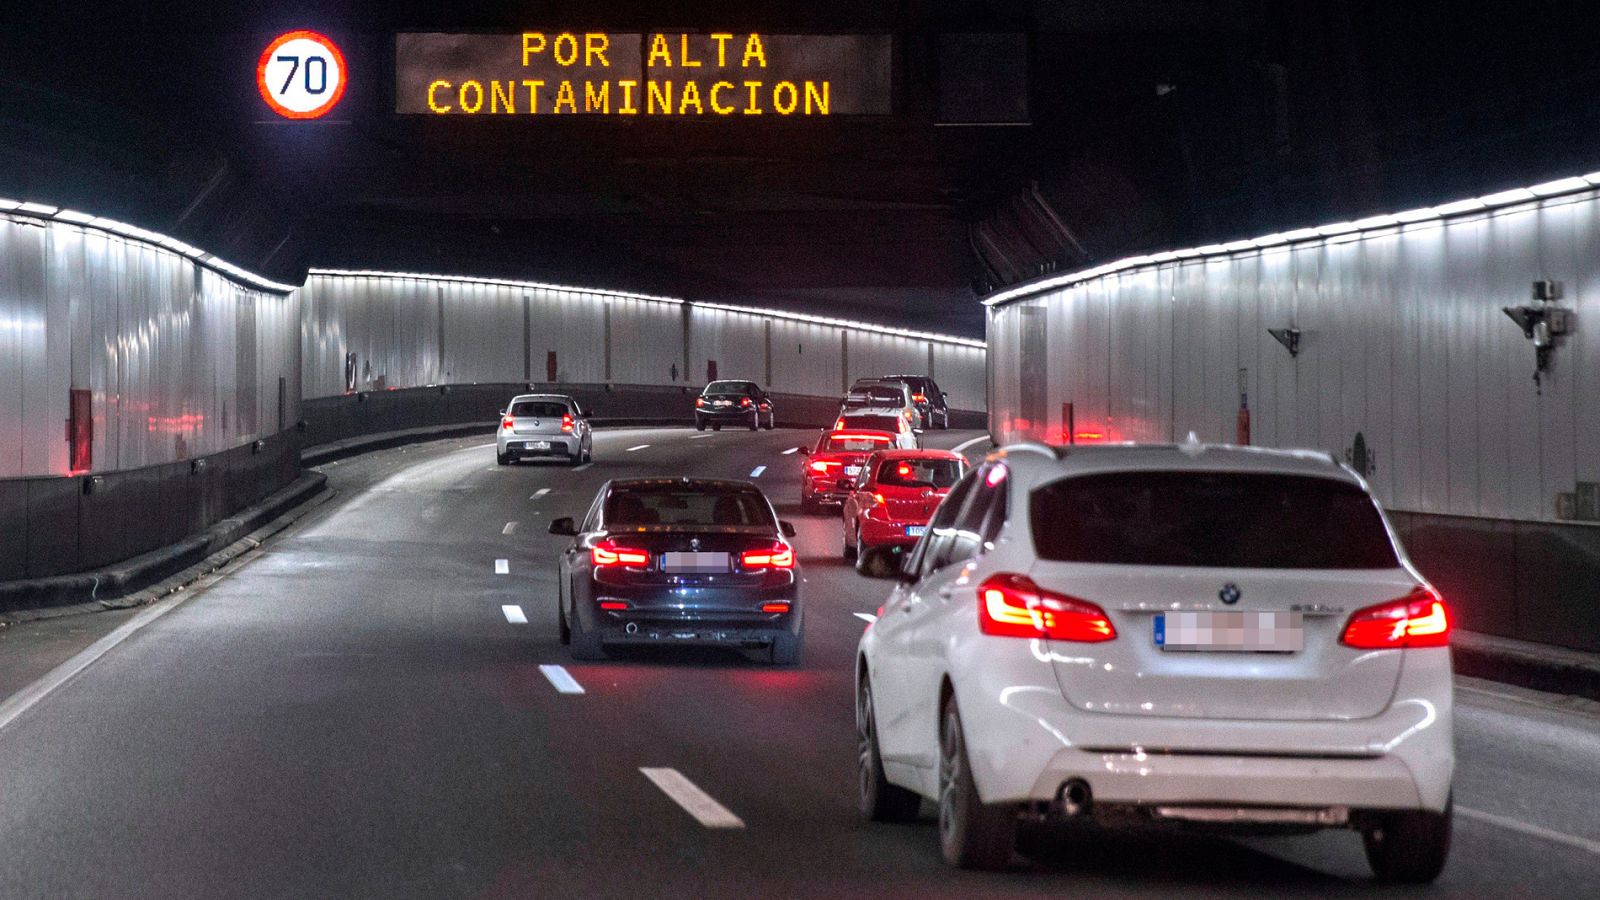 Protocolo de contaminación en Madrid: Los nuevos escenarios de contaminación en Madrid restringirán la circulación a los vehículos sin distintivo ambiental de la DGT